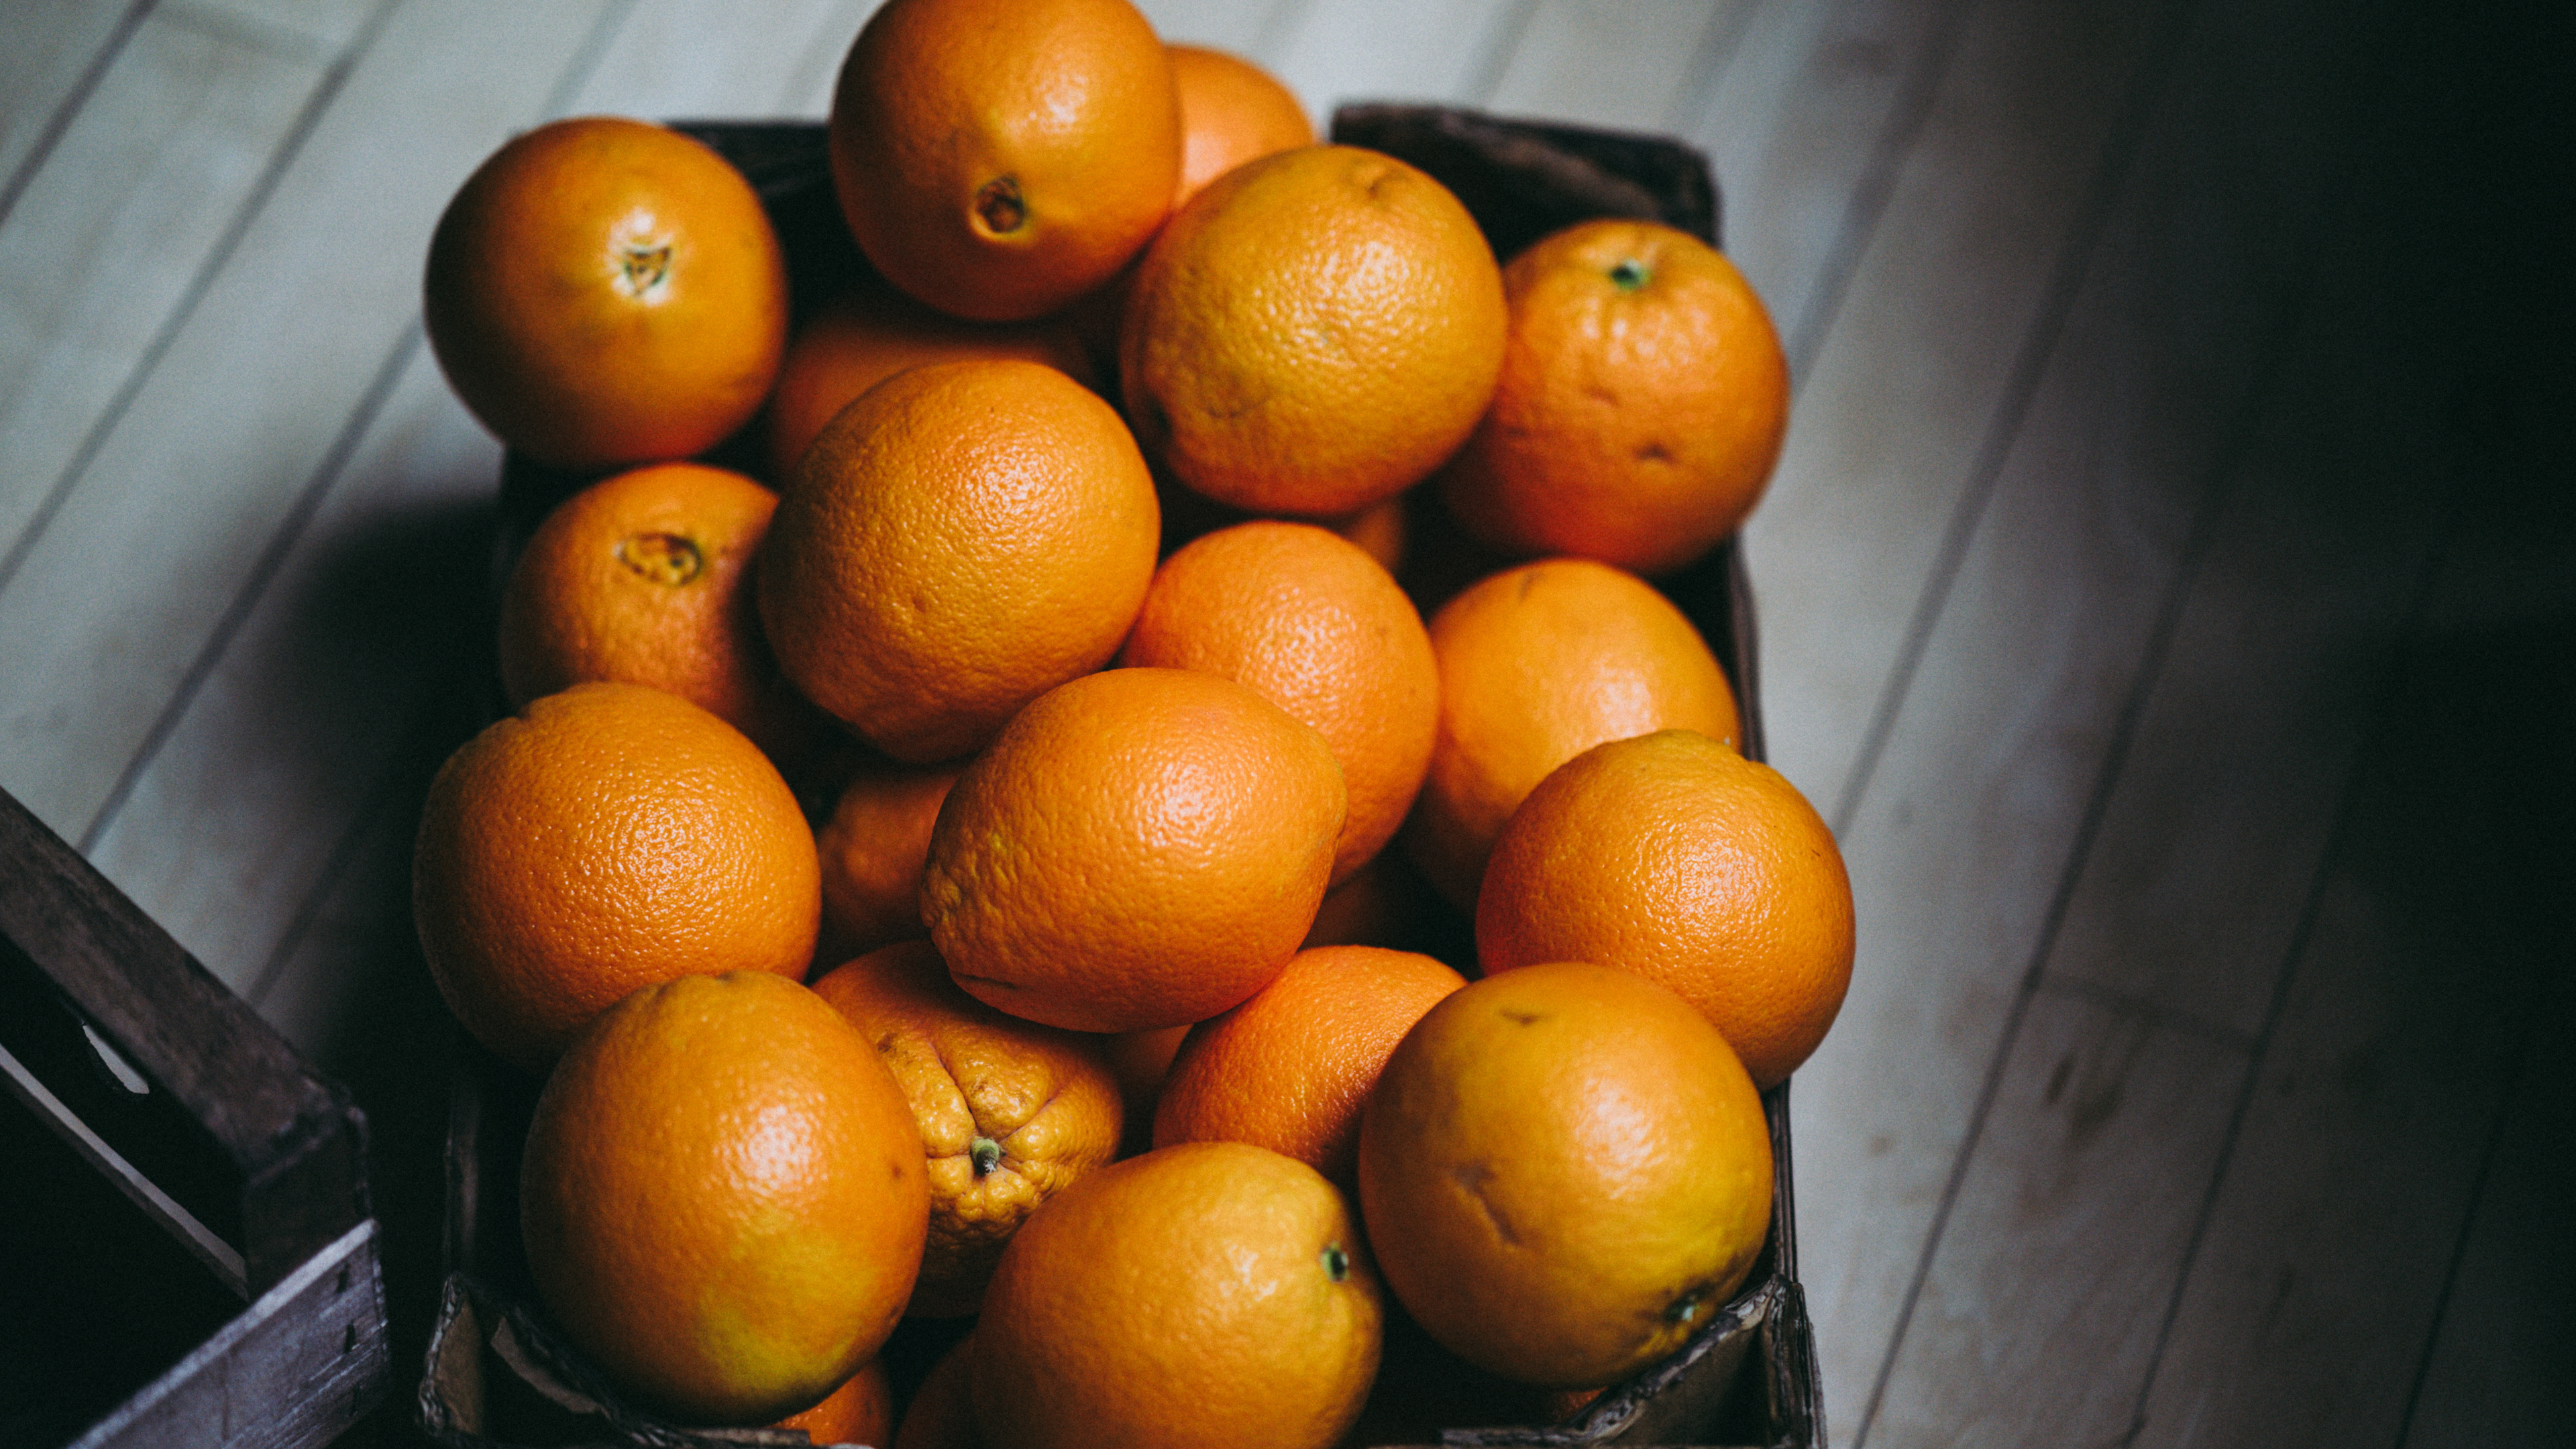 橙色, 朗布尔, Clementine, 橘子, 食品 壁纸 3840x2160 允许